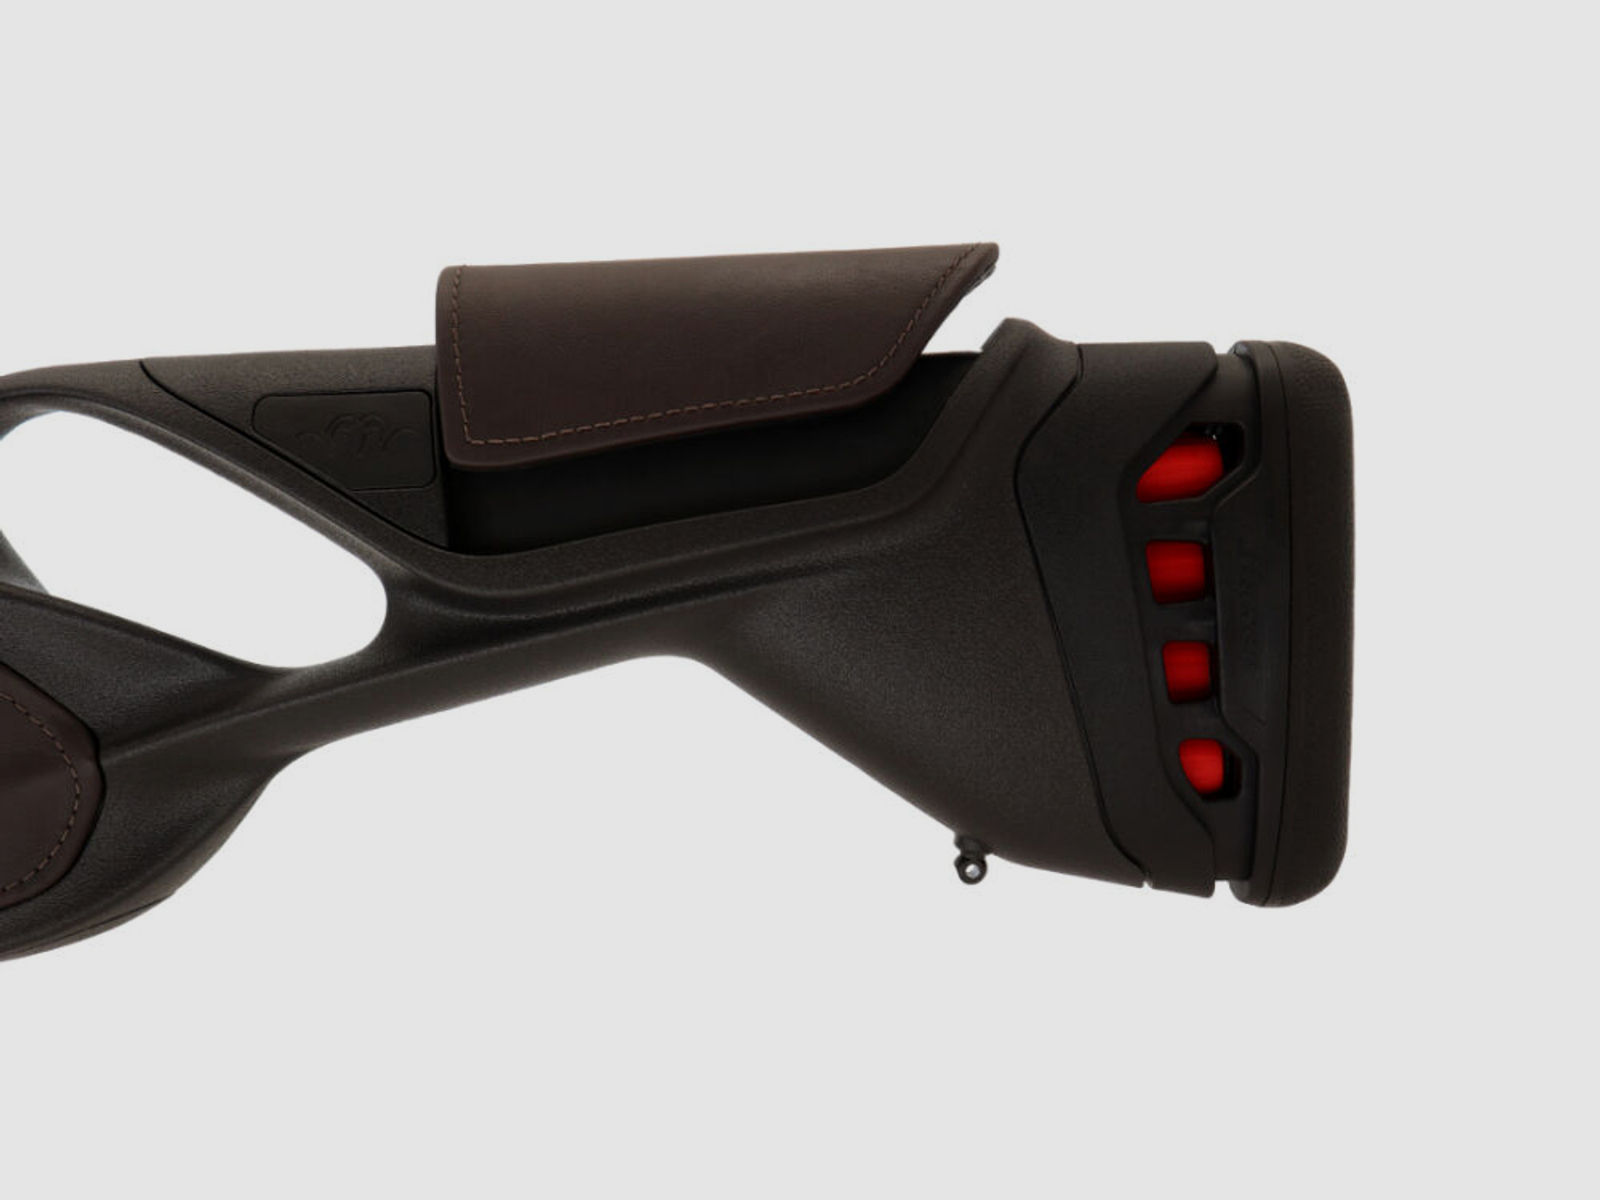 Blaser	 K95 Ultimate Leather LL 52cm Verstellung Dämpfung Mündungsgewinde Handspannung